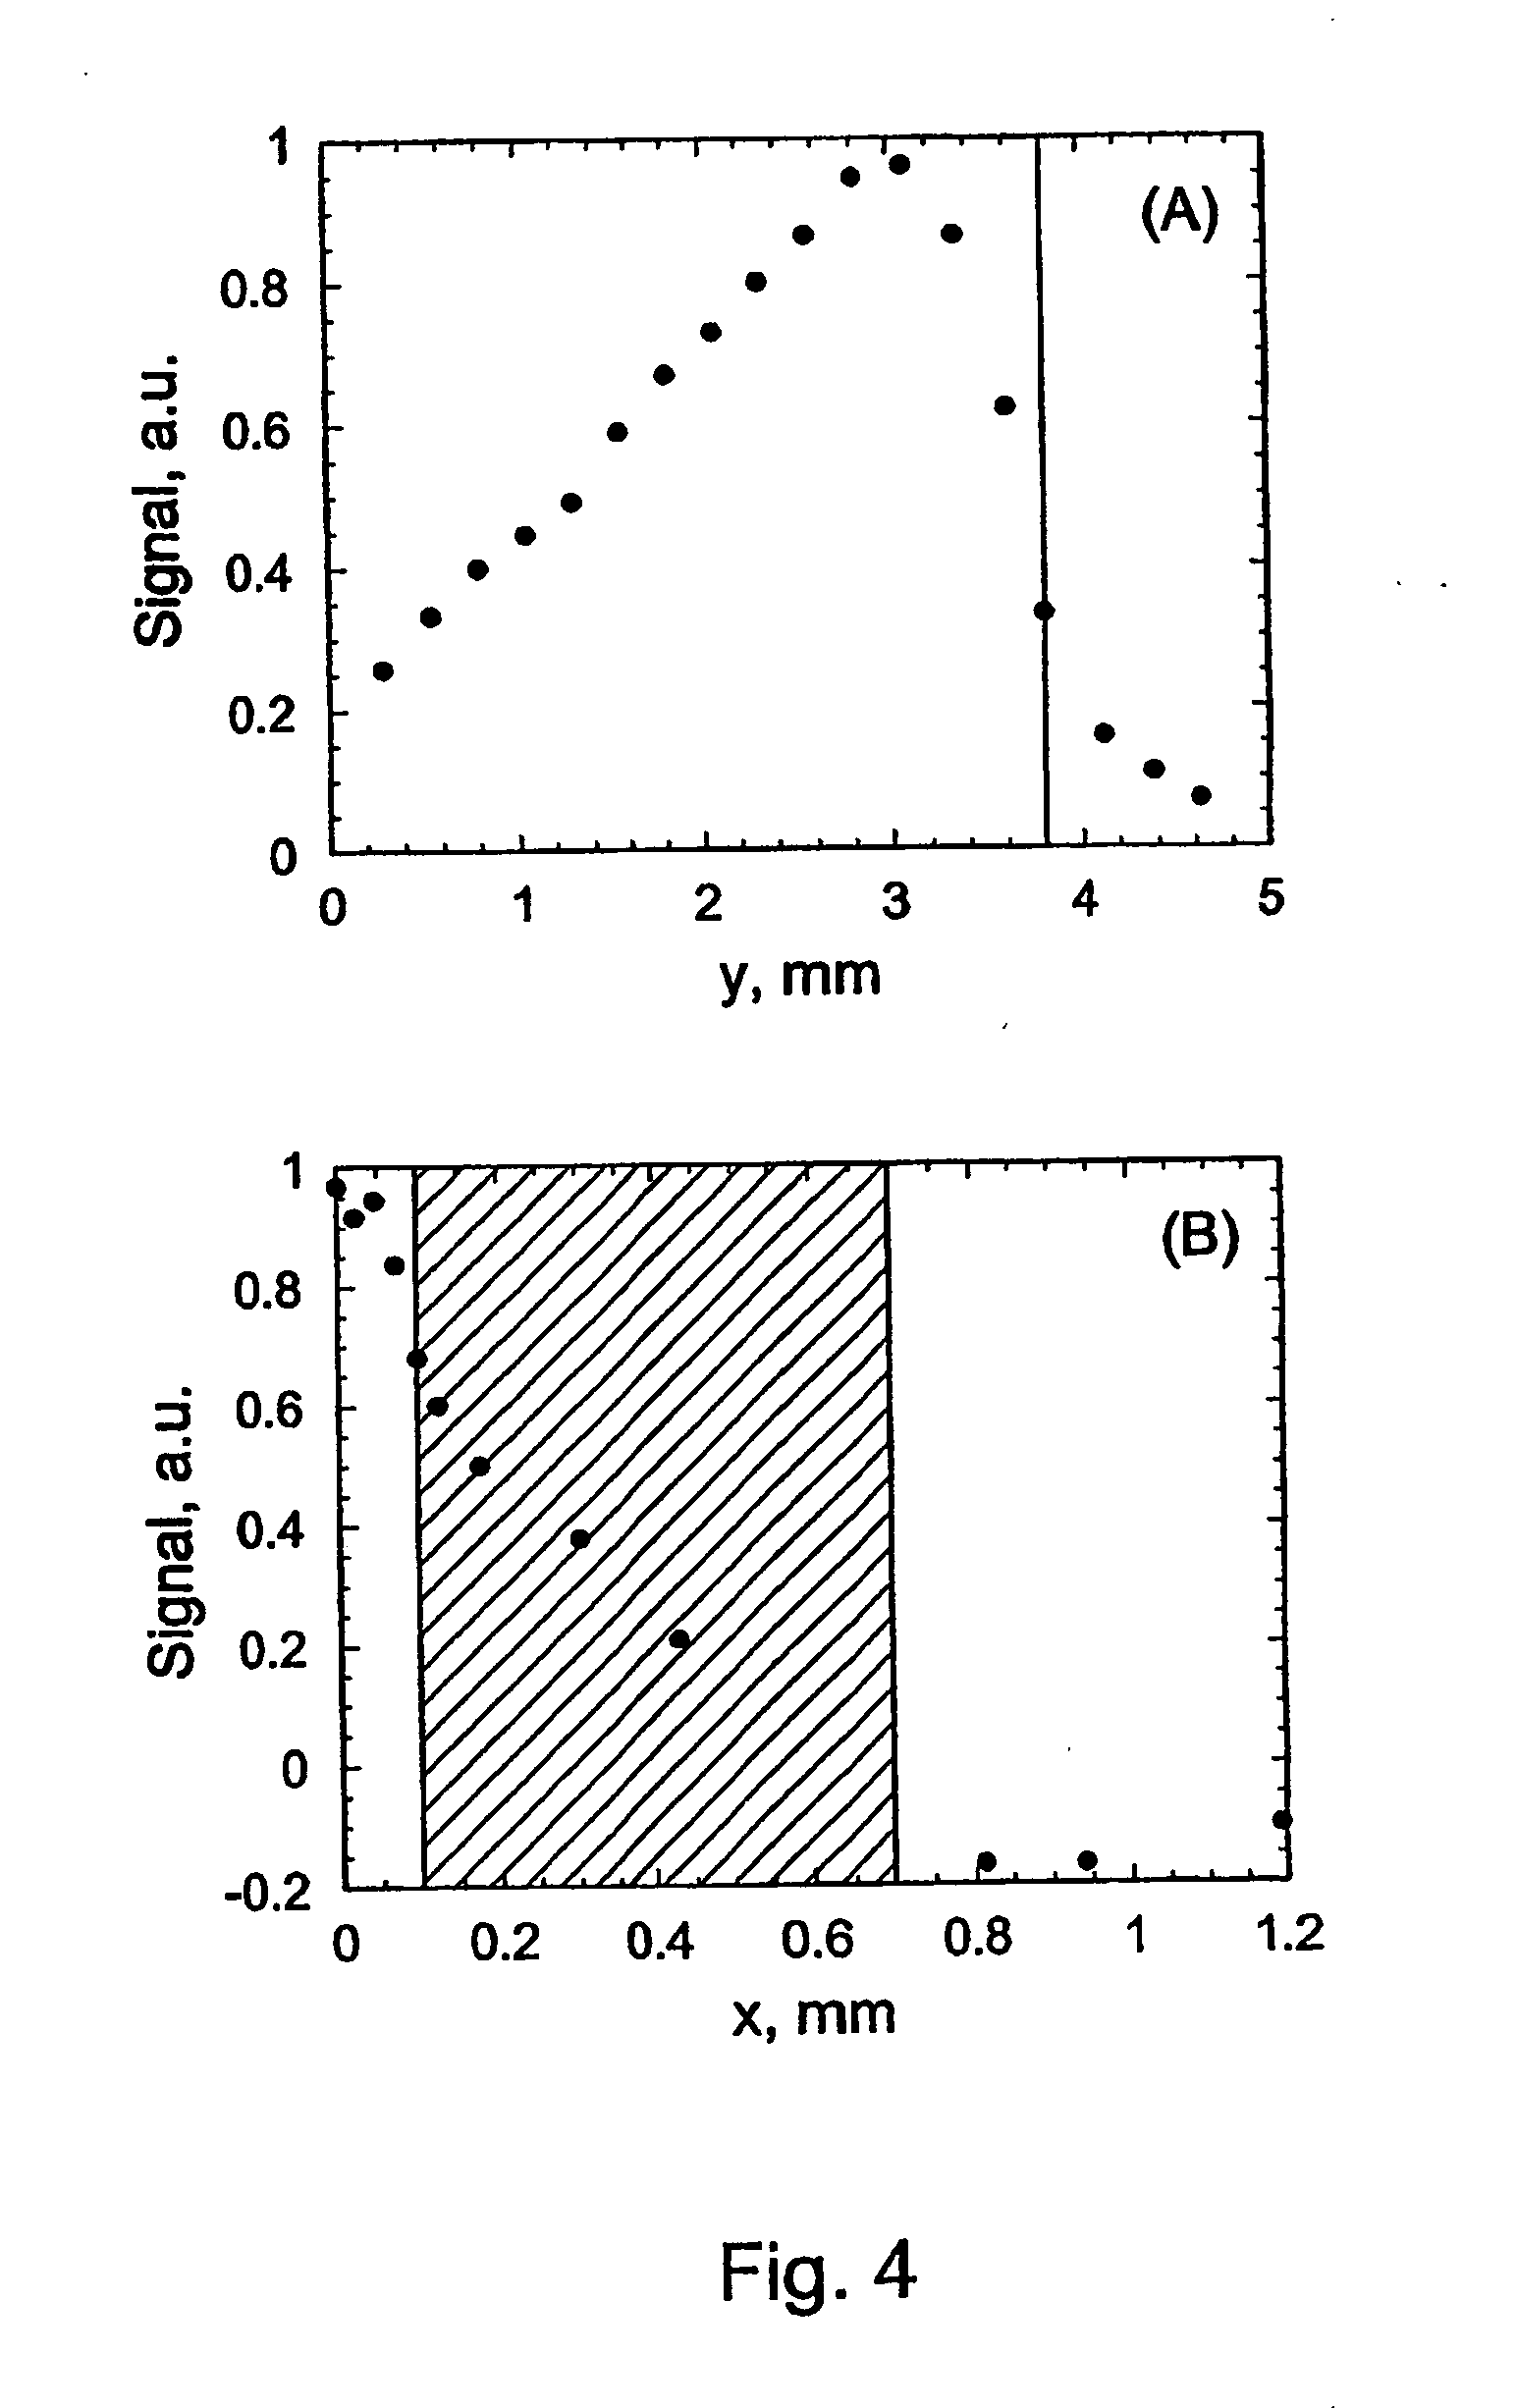 Quartz-enhanced photoacoustic spectroscopy